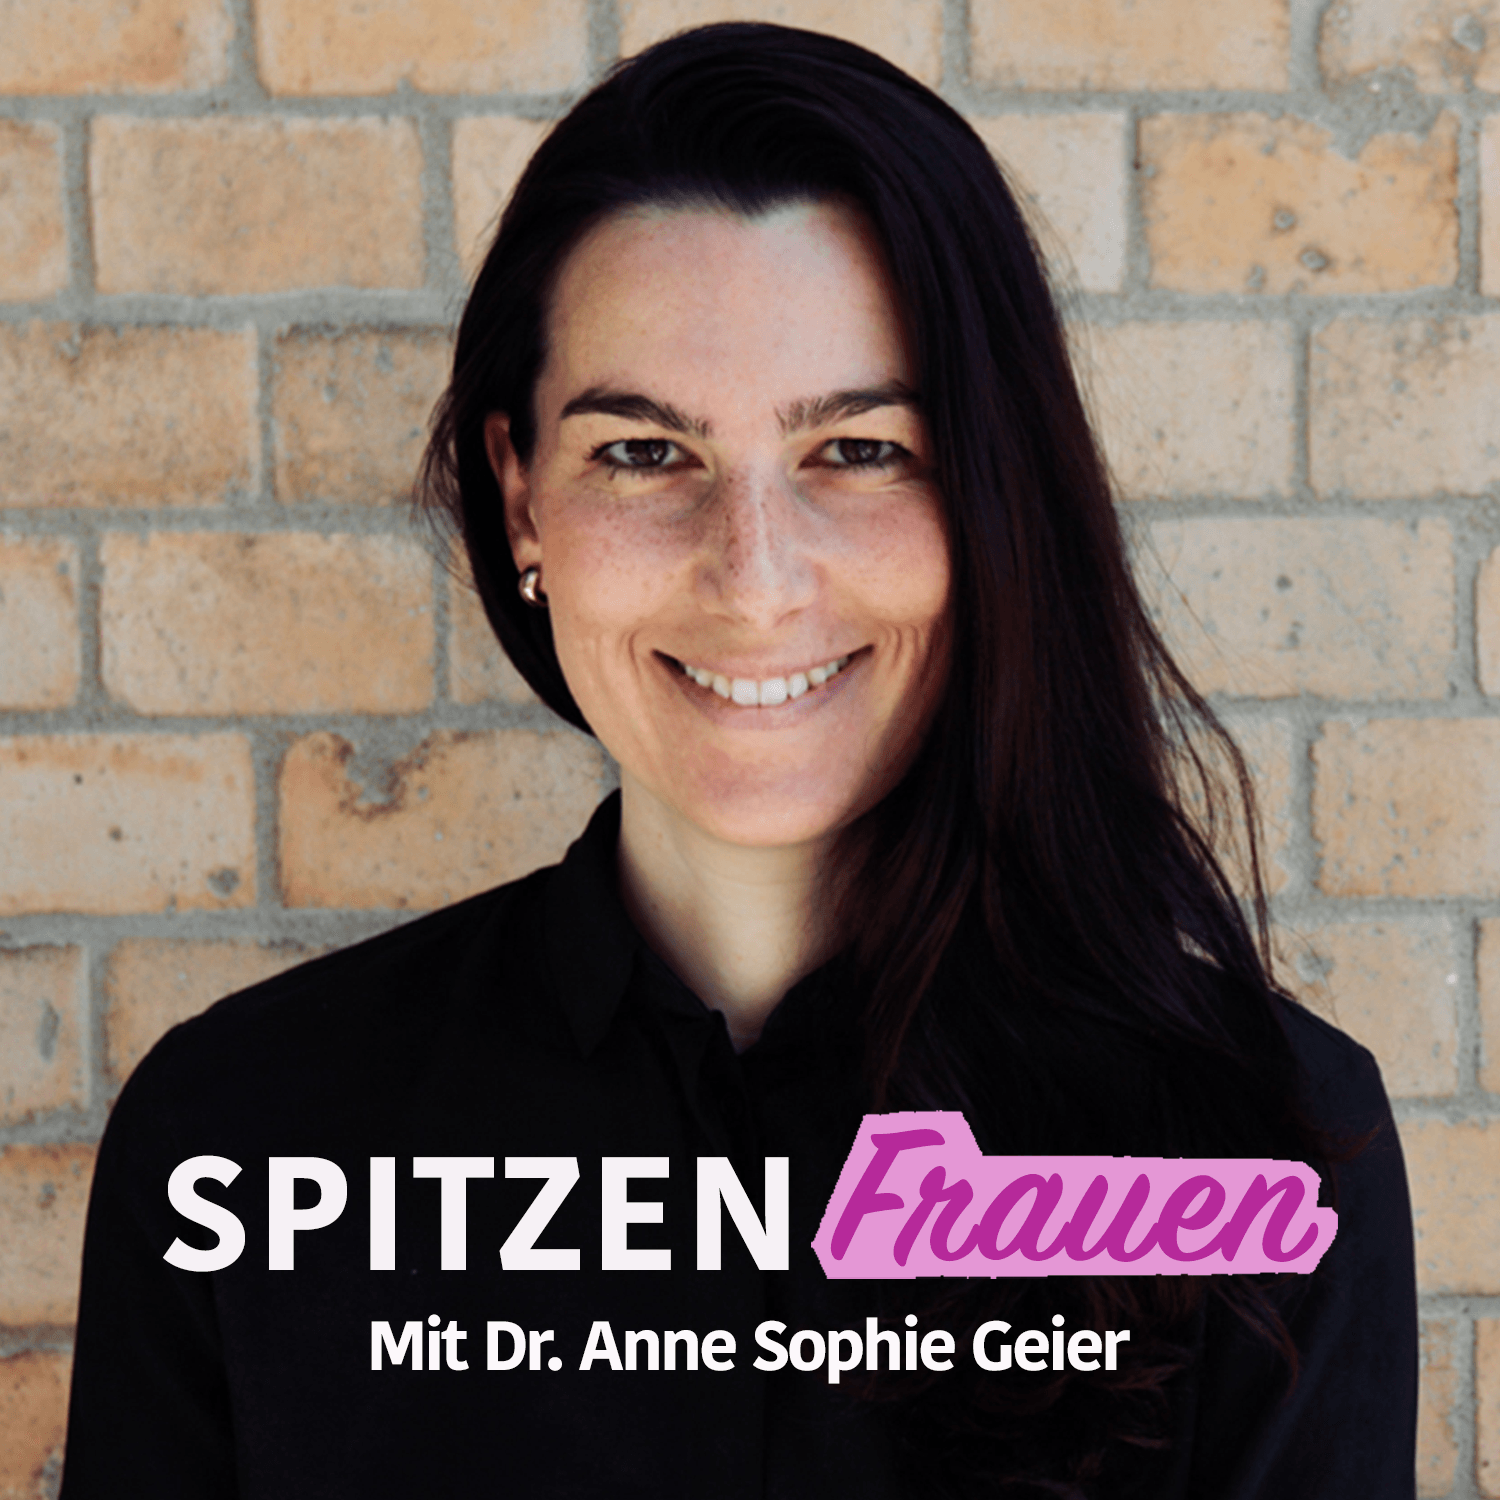 Dr. Anne Sophie Geier: "Warum ist Digitalisierung lebenswichtig?"